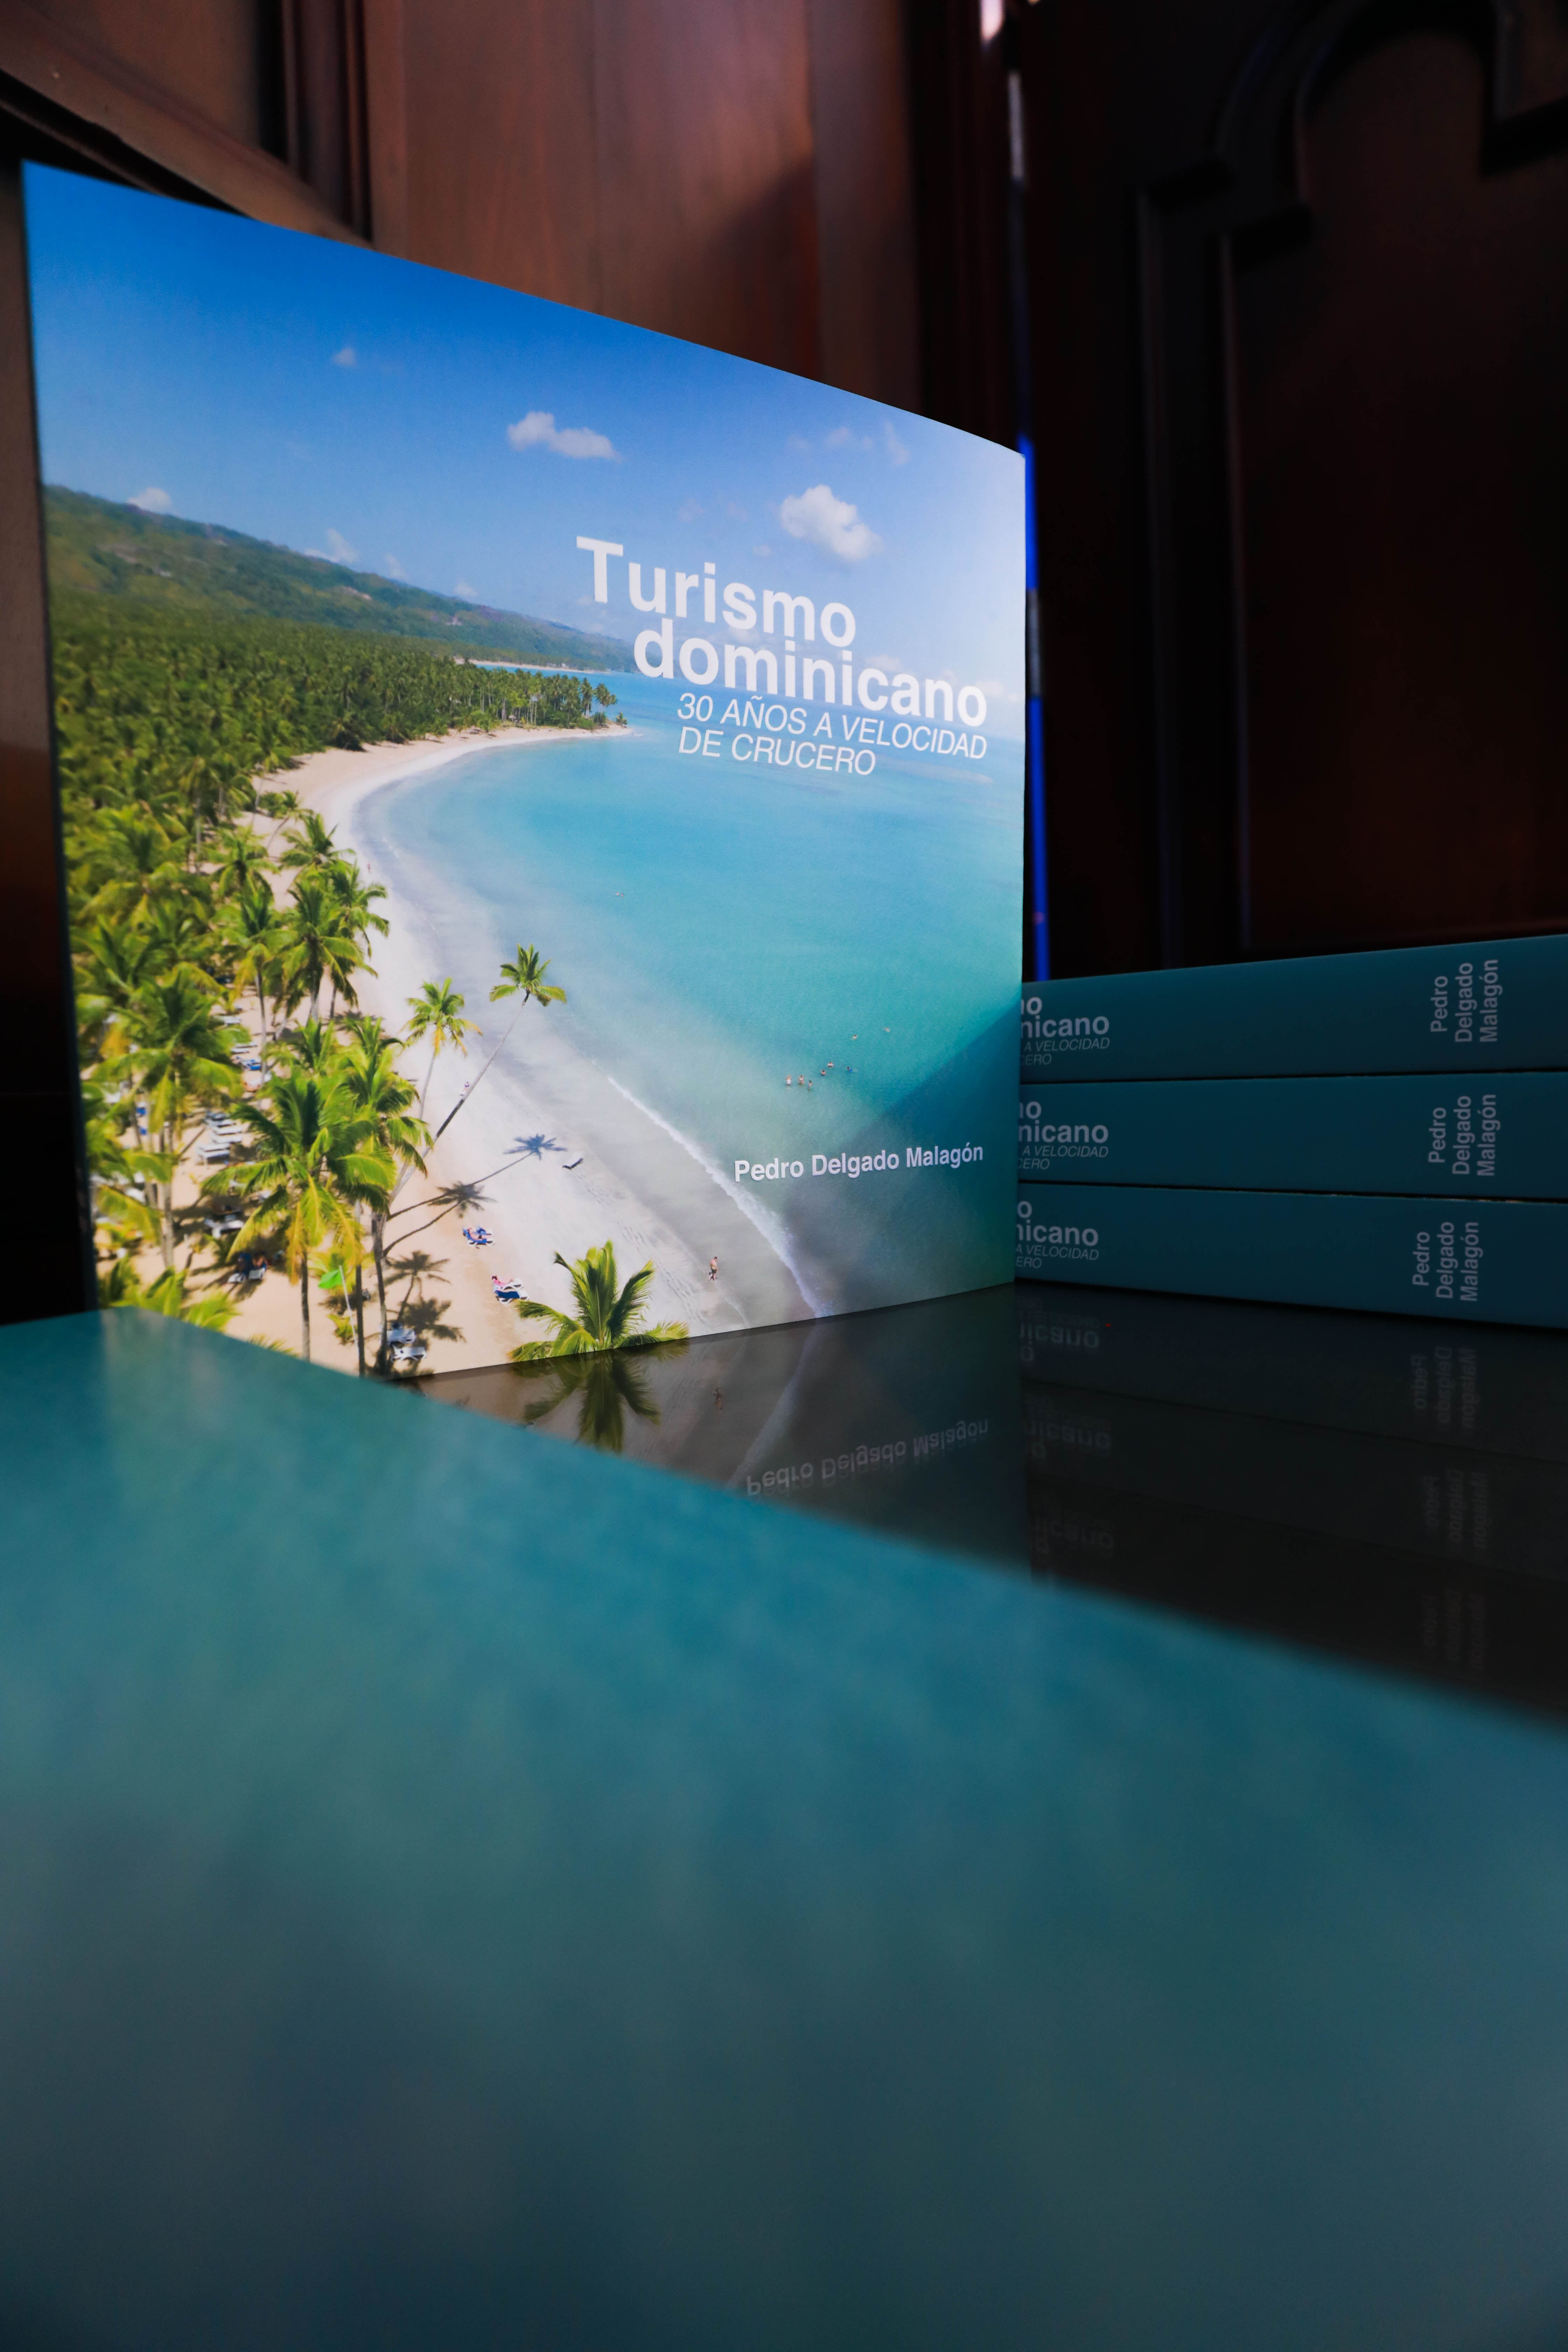 El libro “Turismo dominicano: 30 años a velocidad de crucero” eleva la marca país del turismo nacional.